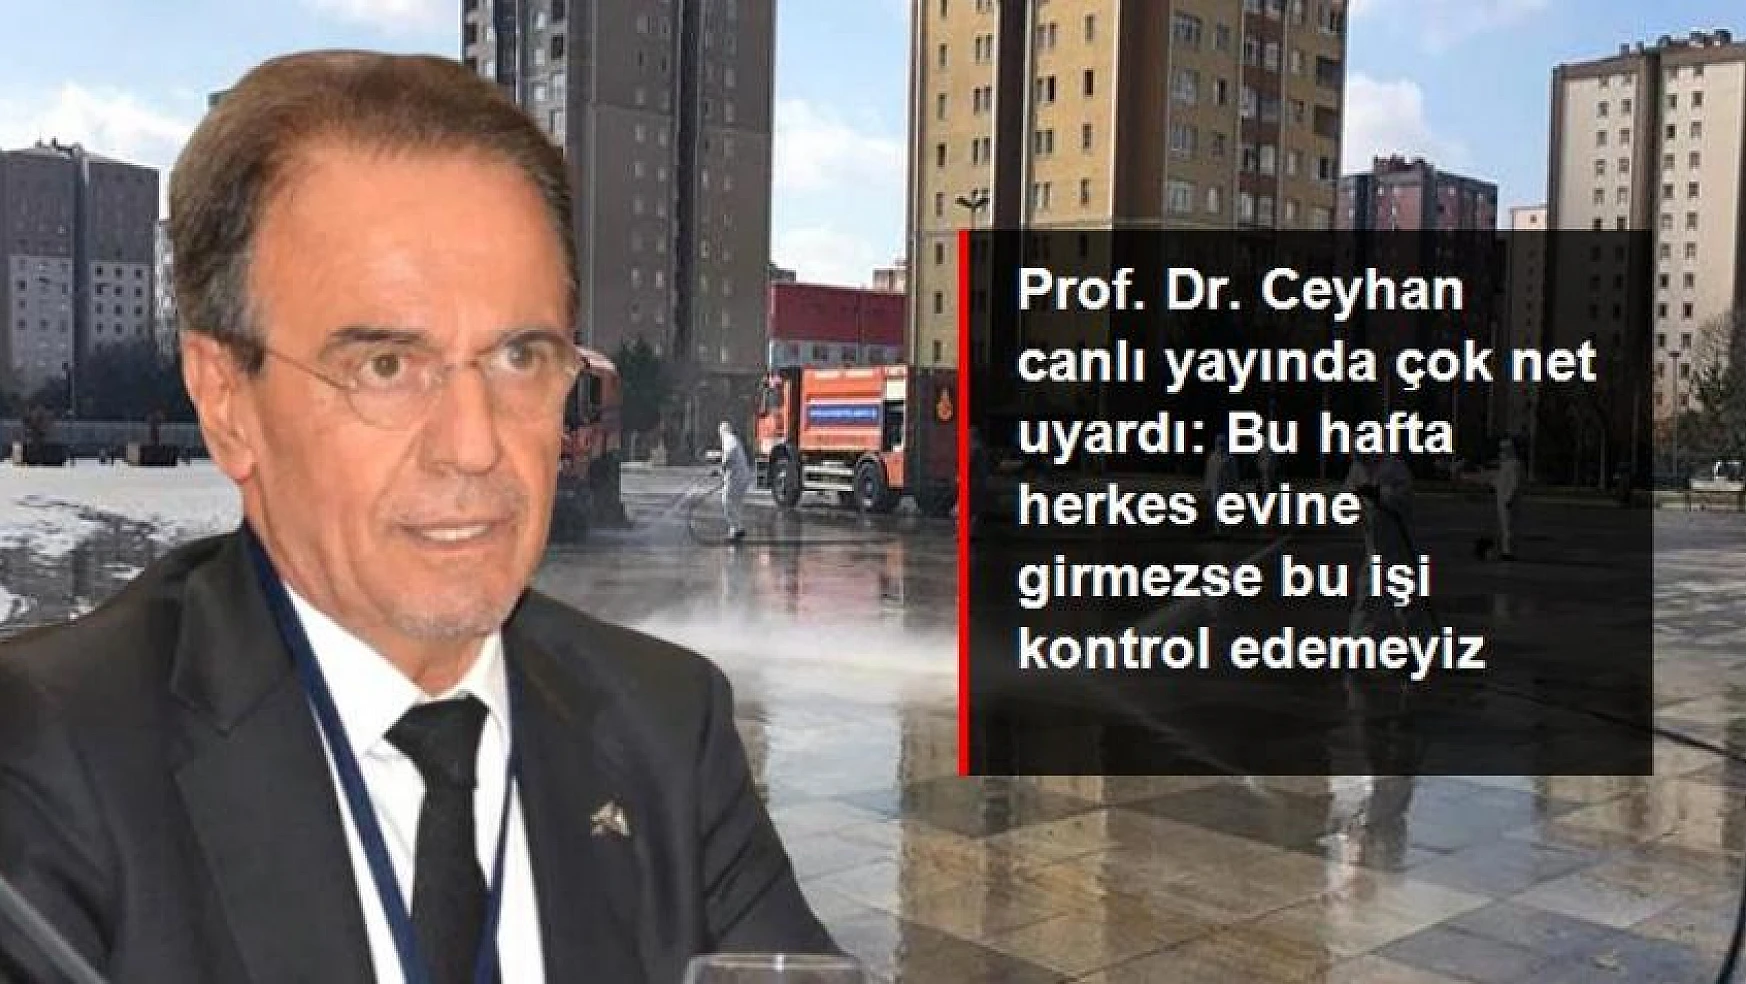 Prof. Dr. Ceyhan canlı yayında çok net uyardı: Bu hafta herkes evine girmezse bu işi kontrol edemeyiz